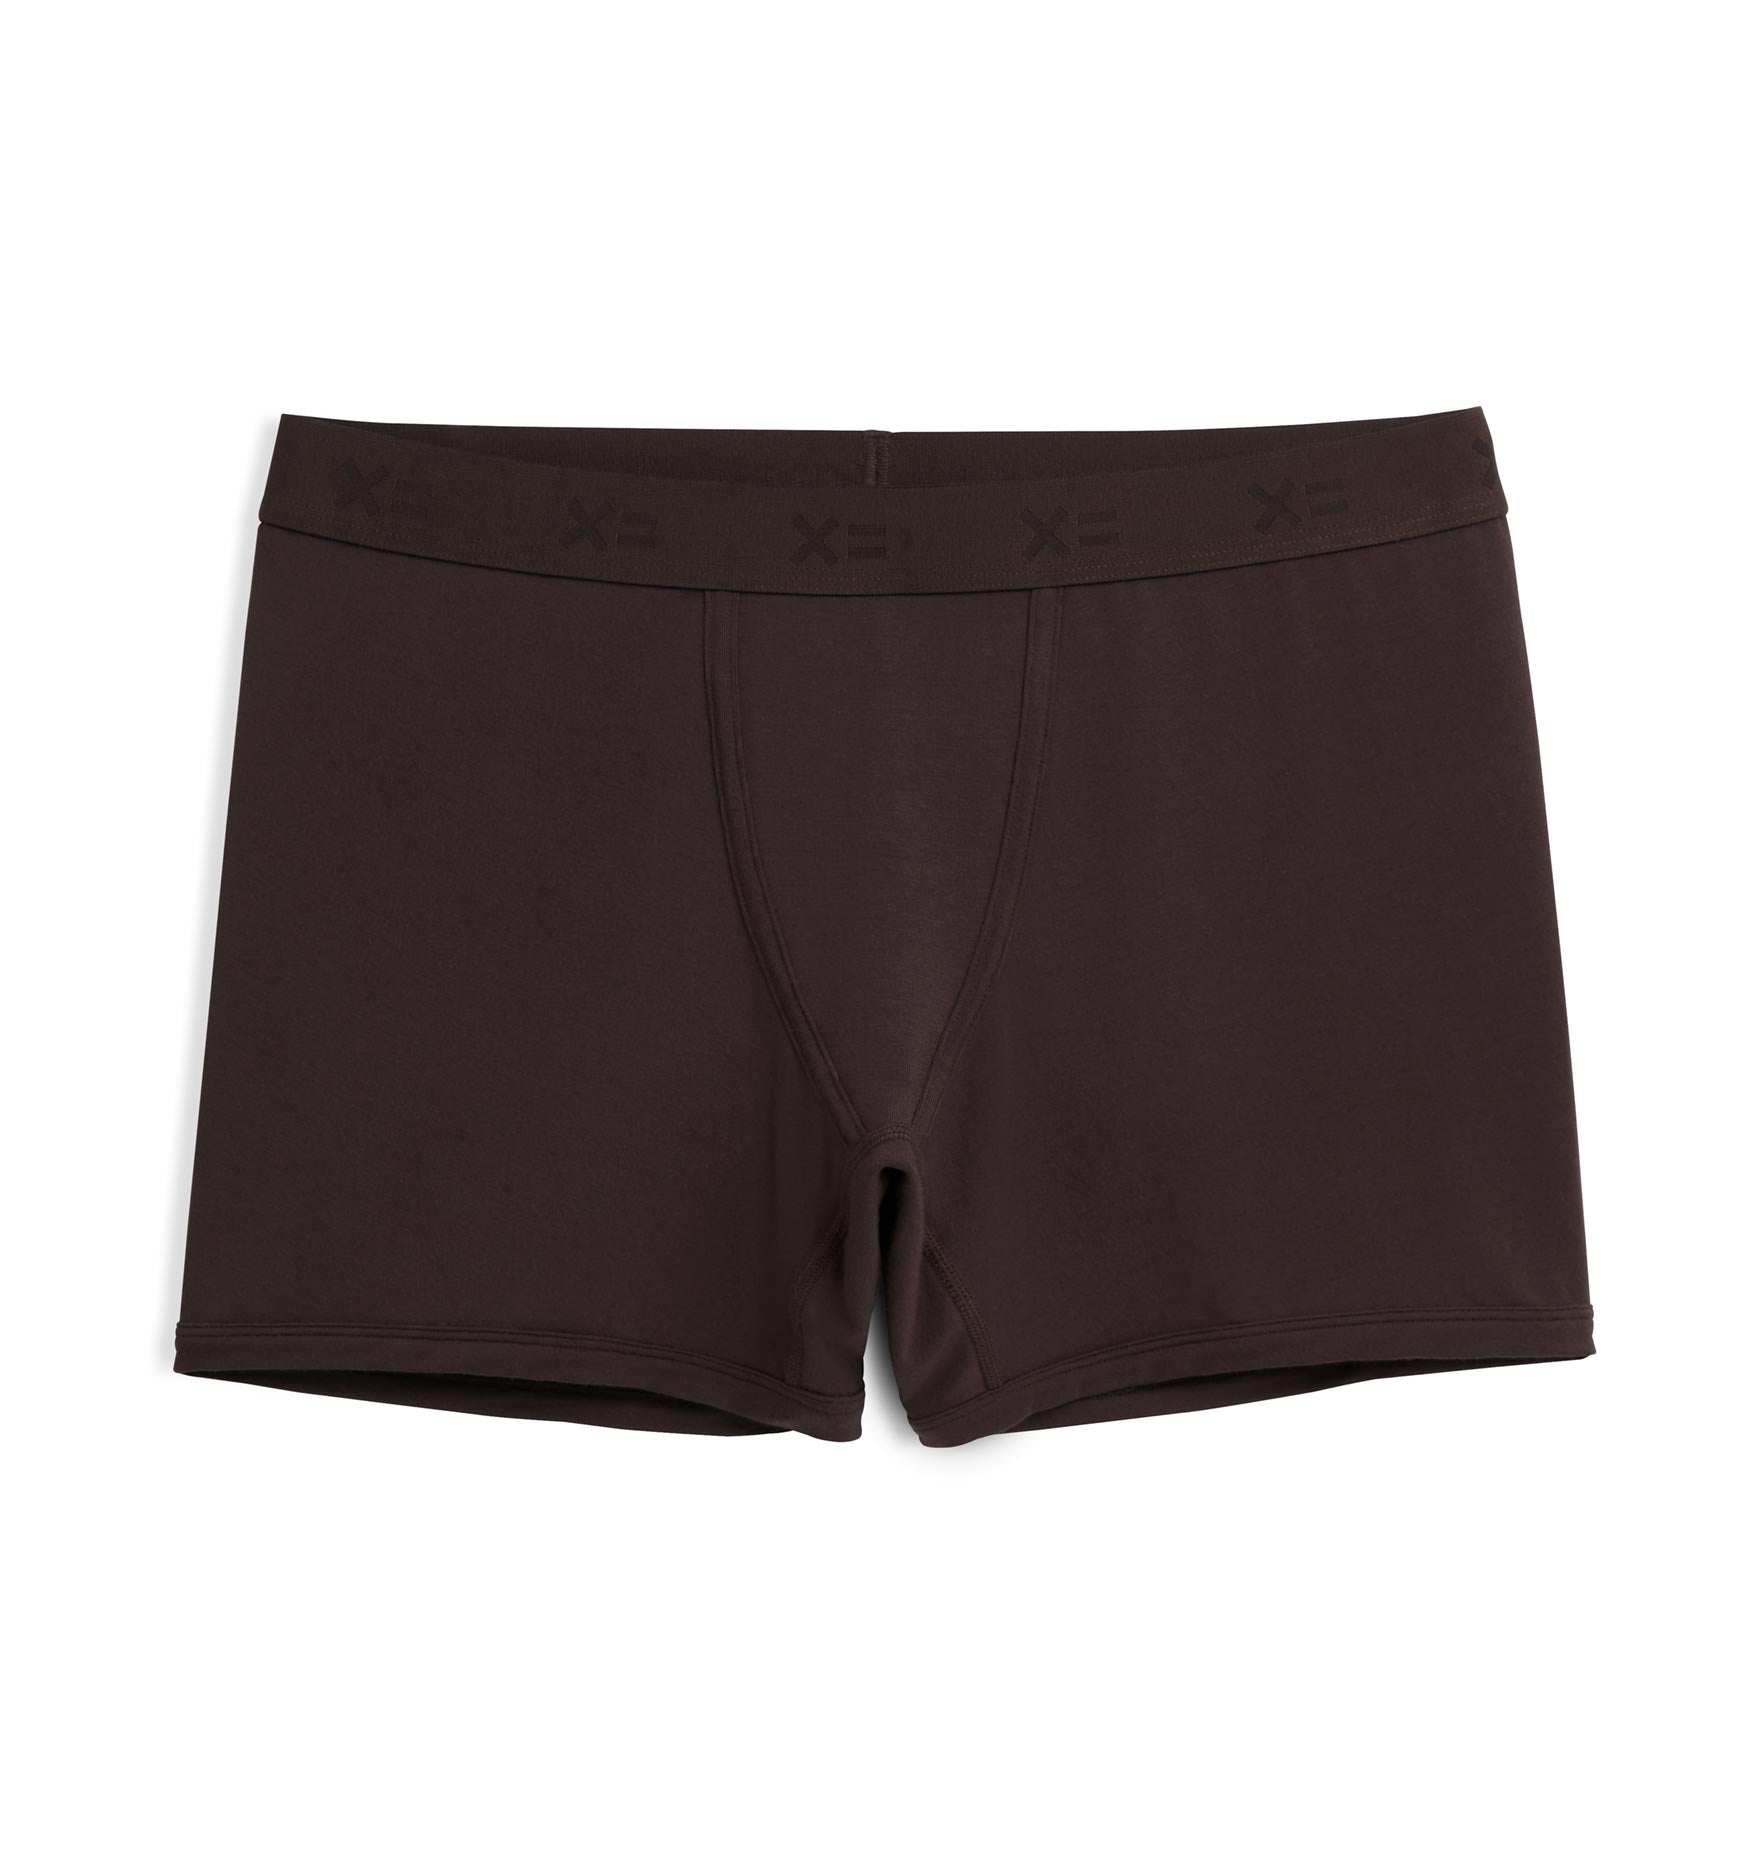 Tomboyx Boxer Briefs Underwear, 4.5 Inseam, Modal Stretch